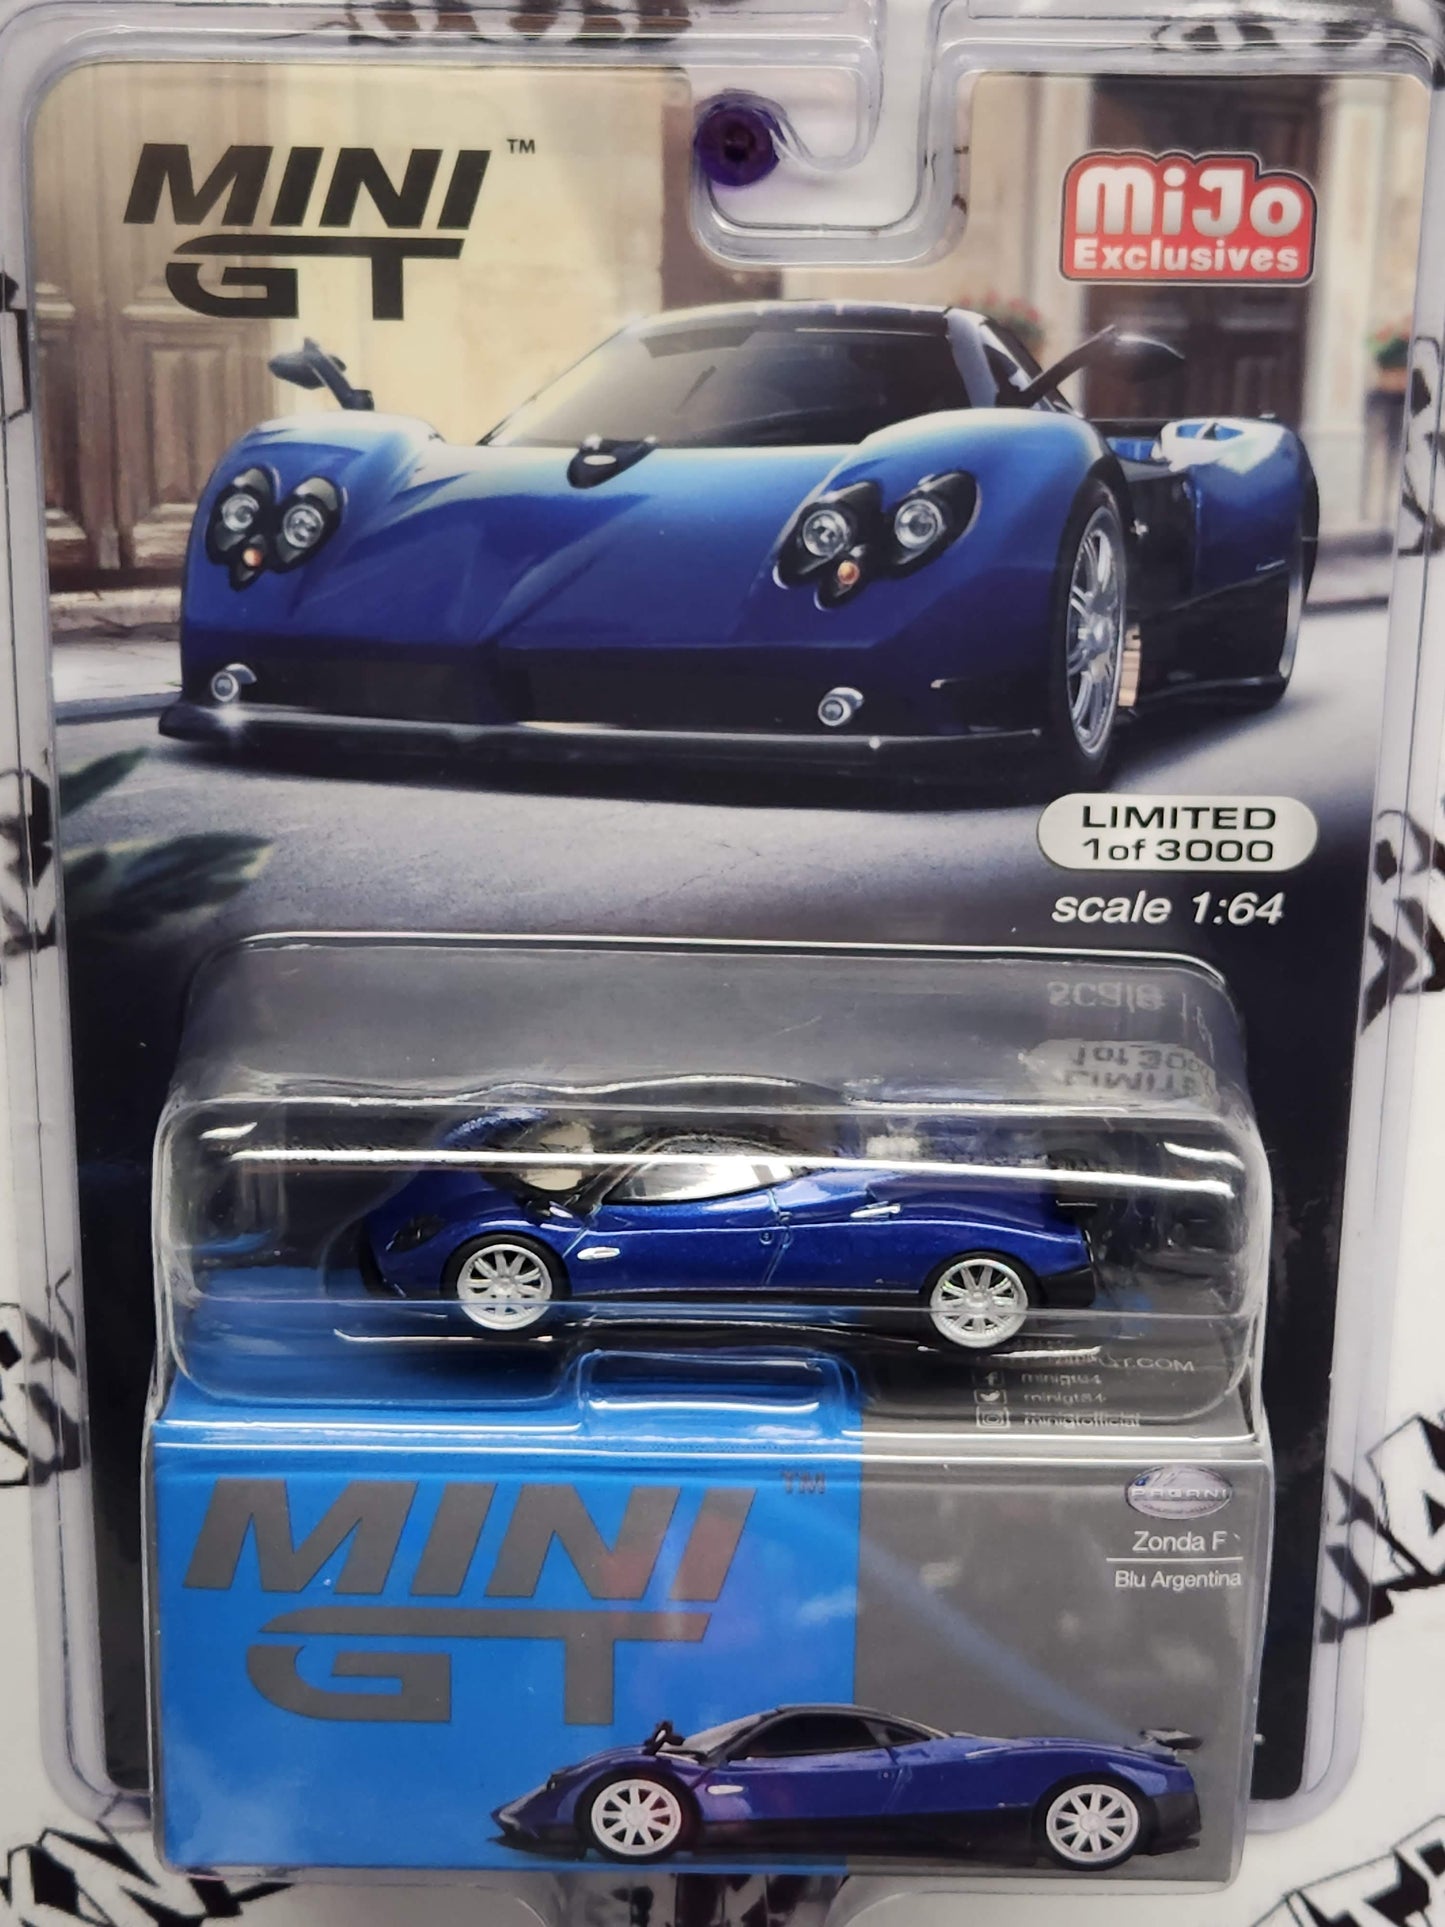 MINI GT Pagani Zonda F Blue Argentina Limited Edition – Mijo Exclusive USA